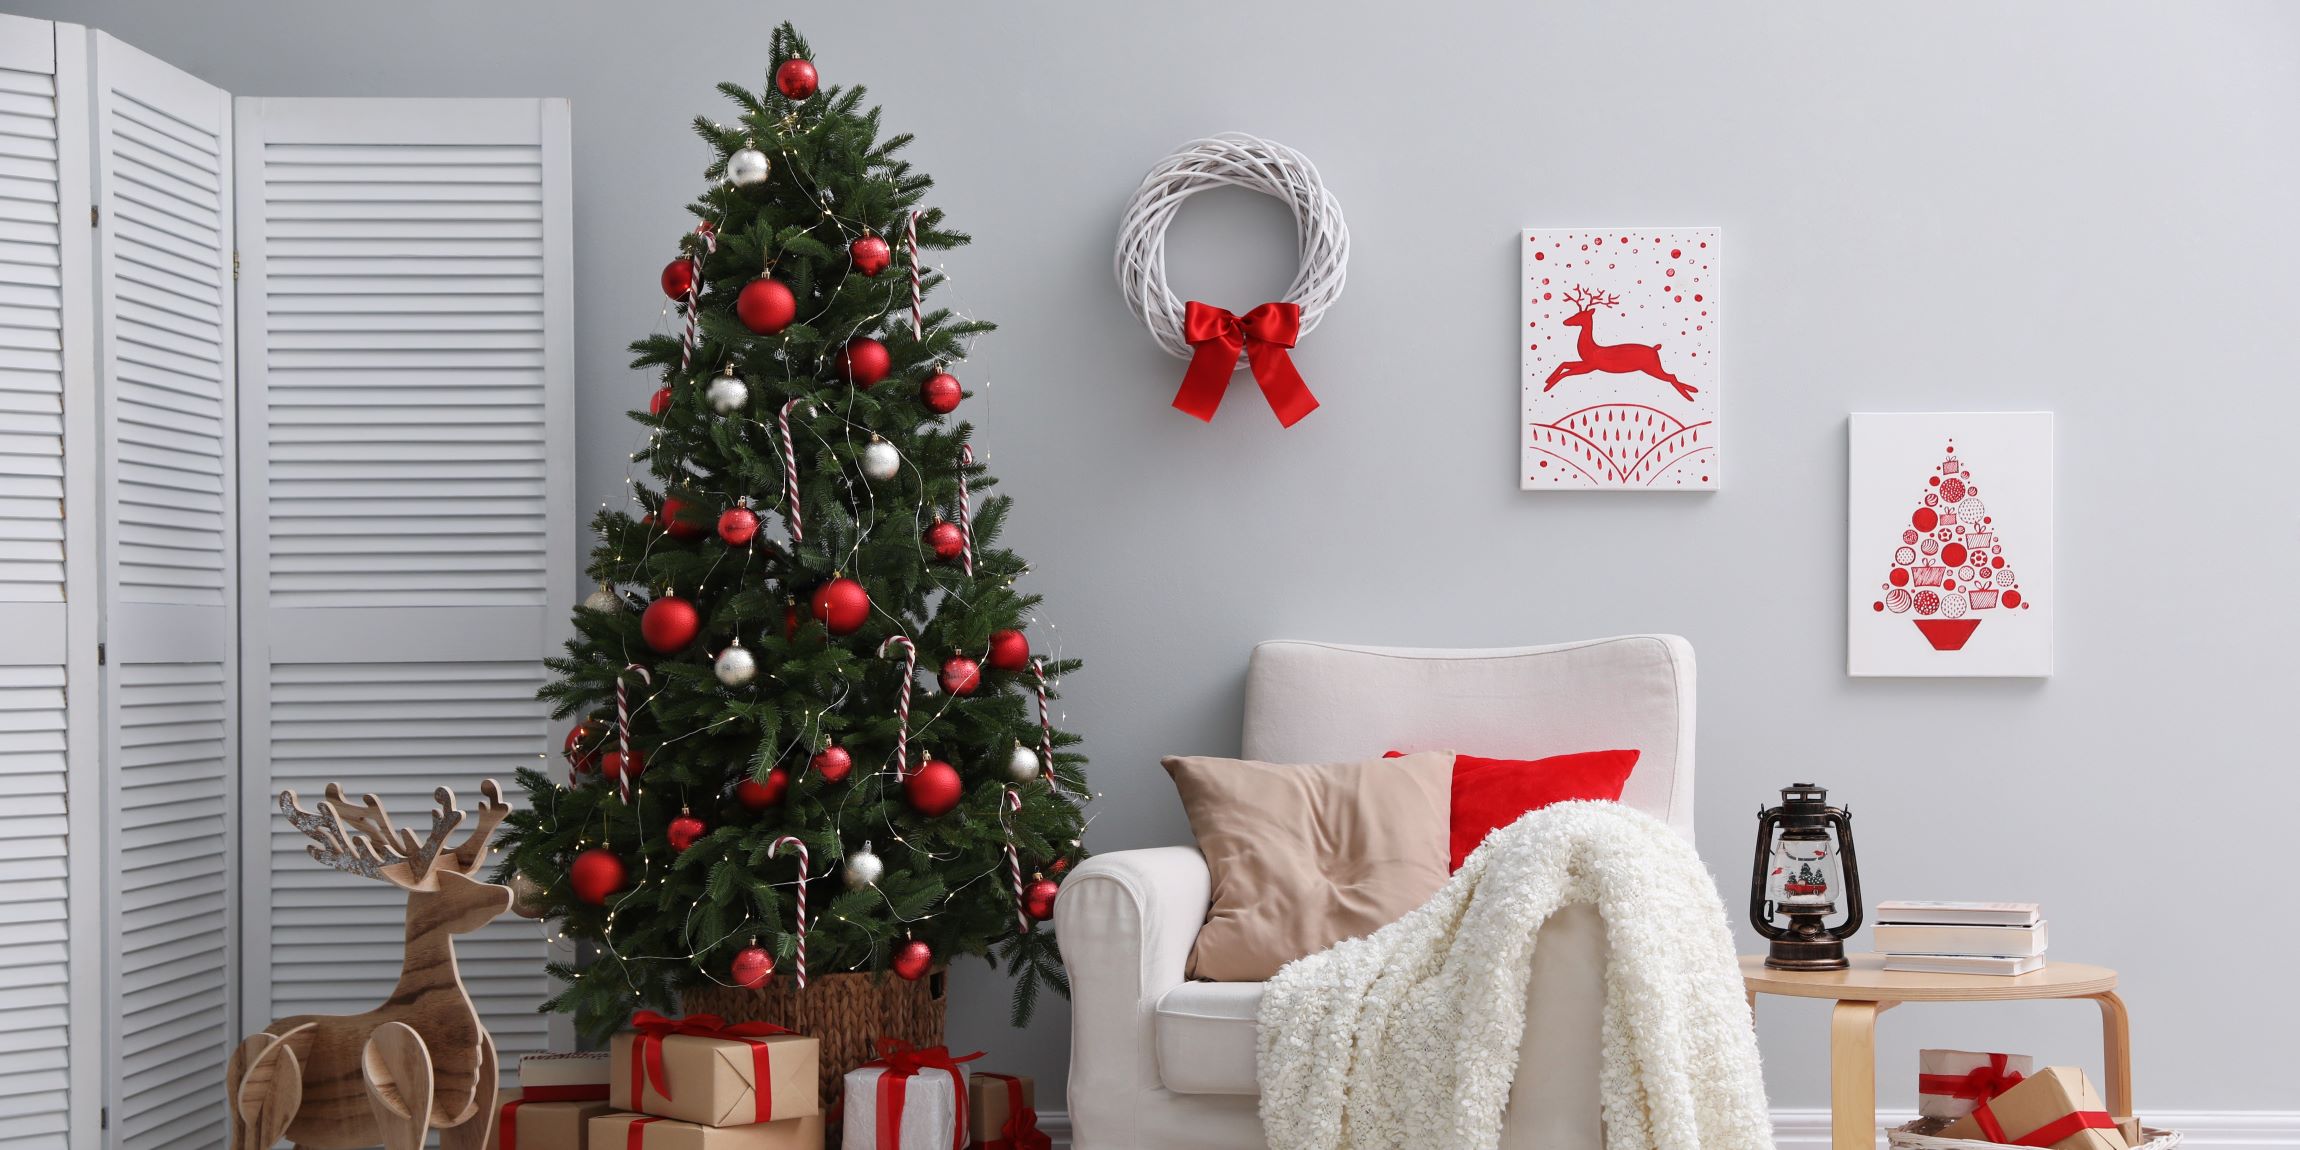 Decoración navideña. Interior de una casa con adornos navideños, es un entorno moderno y sofisticado para pasar la navidad. 